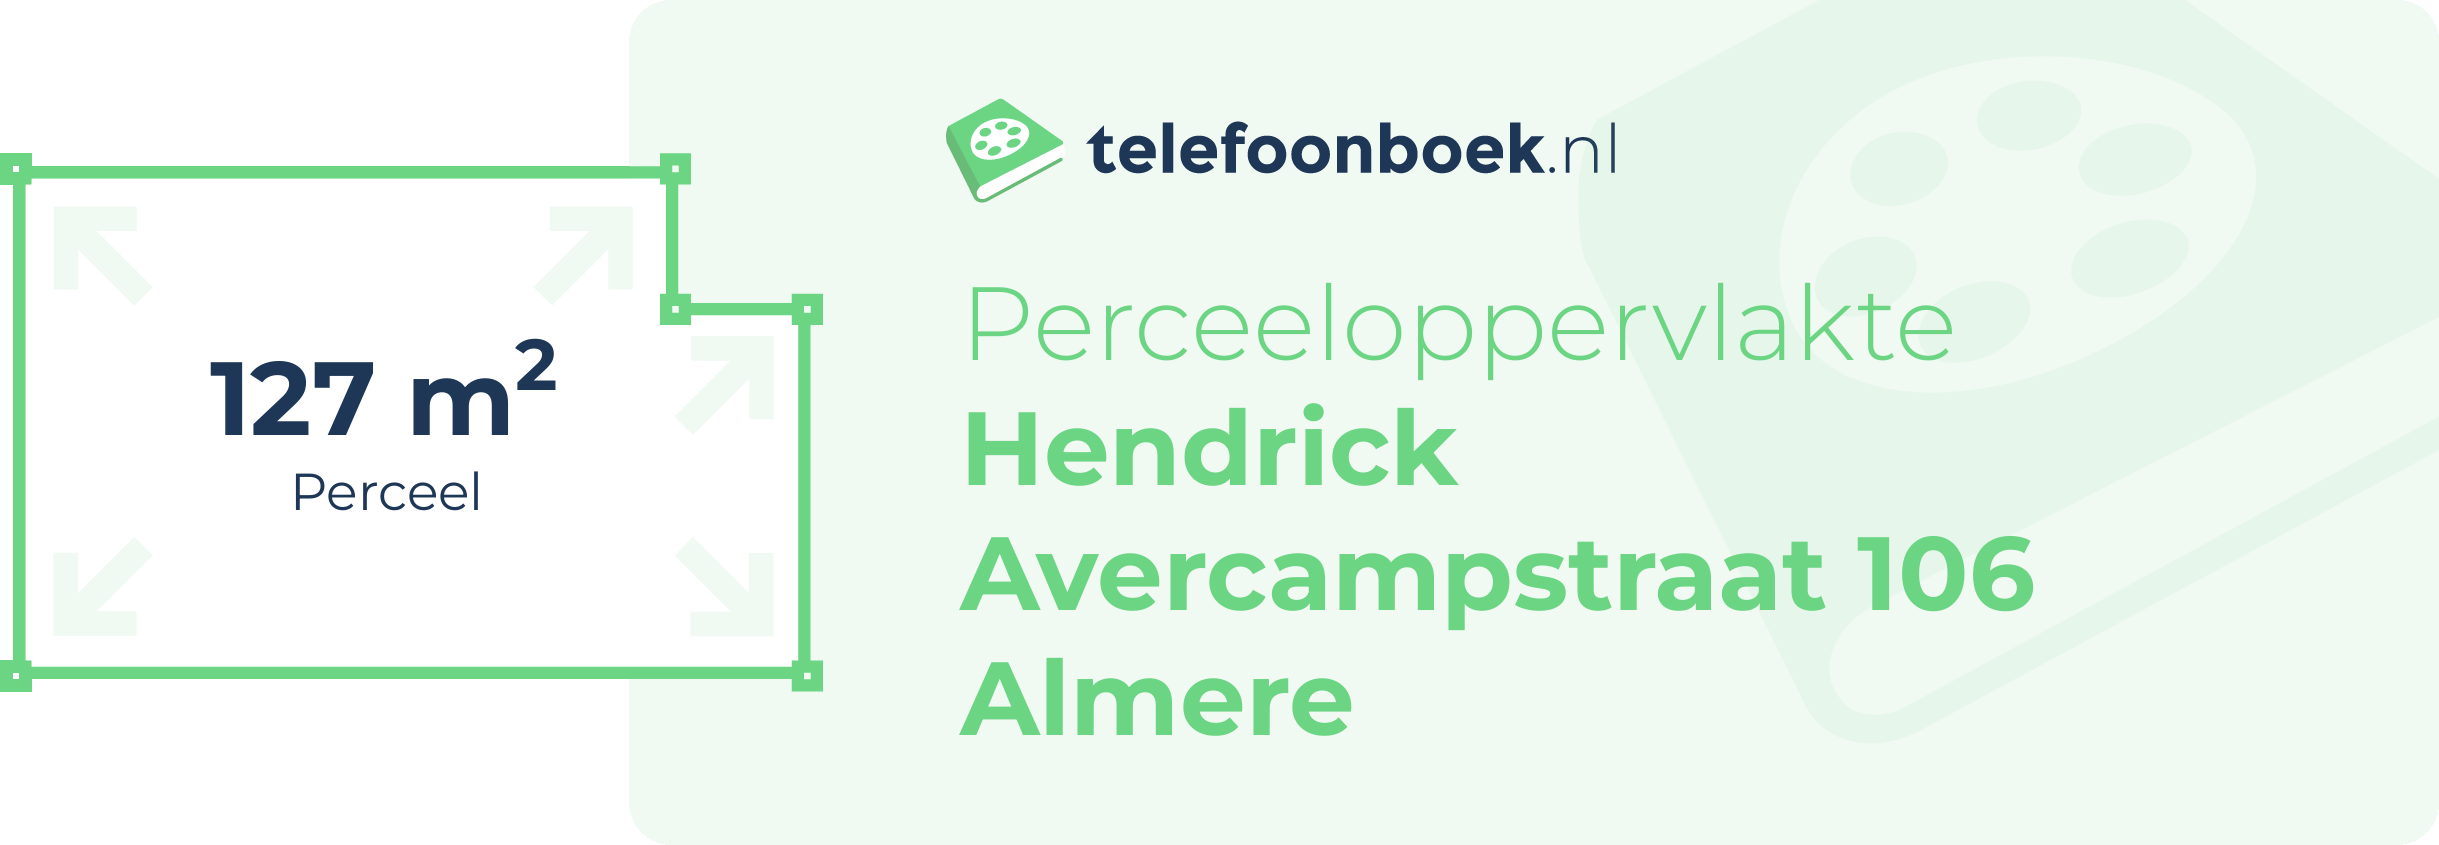 Perceeloppervlakte Hendrick Avercampstraat 106 Almere